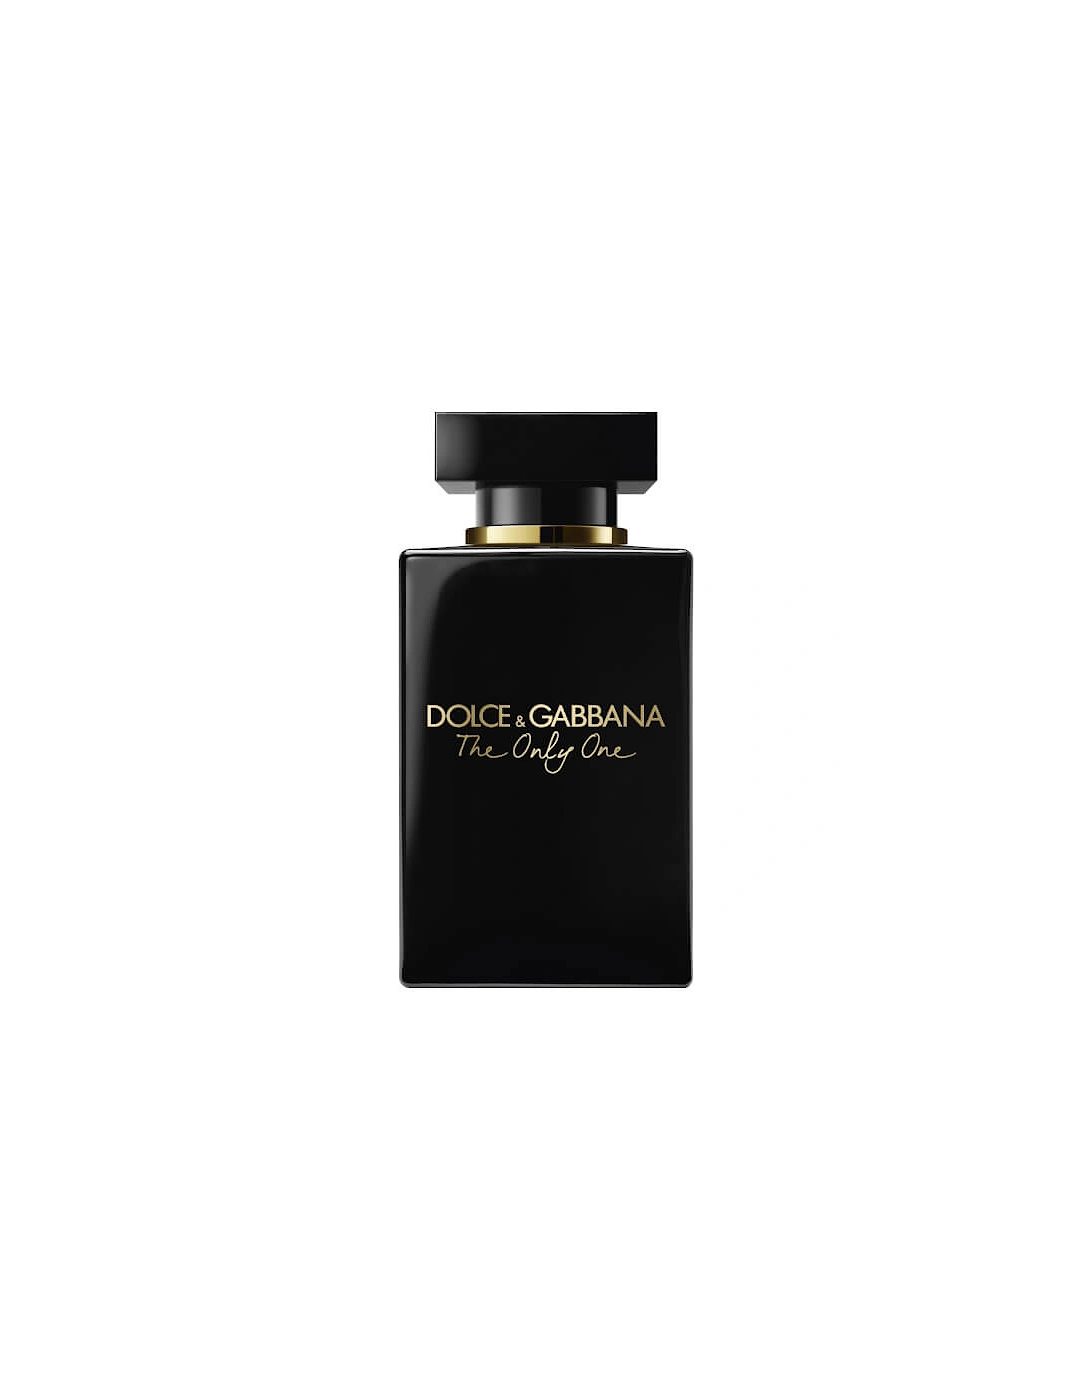 Dolce&Gabbana The Only One Eau de Parfum Intense - 50ml, 2 of 1